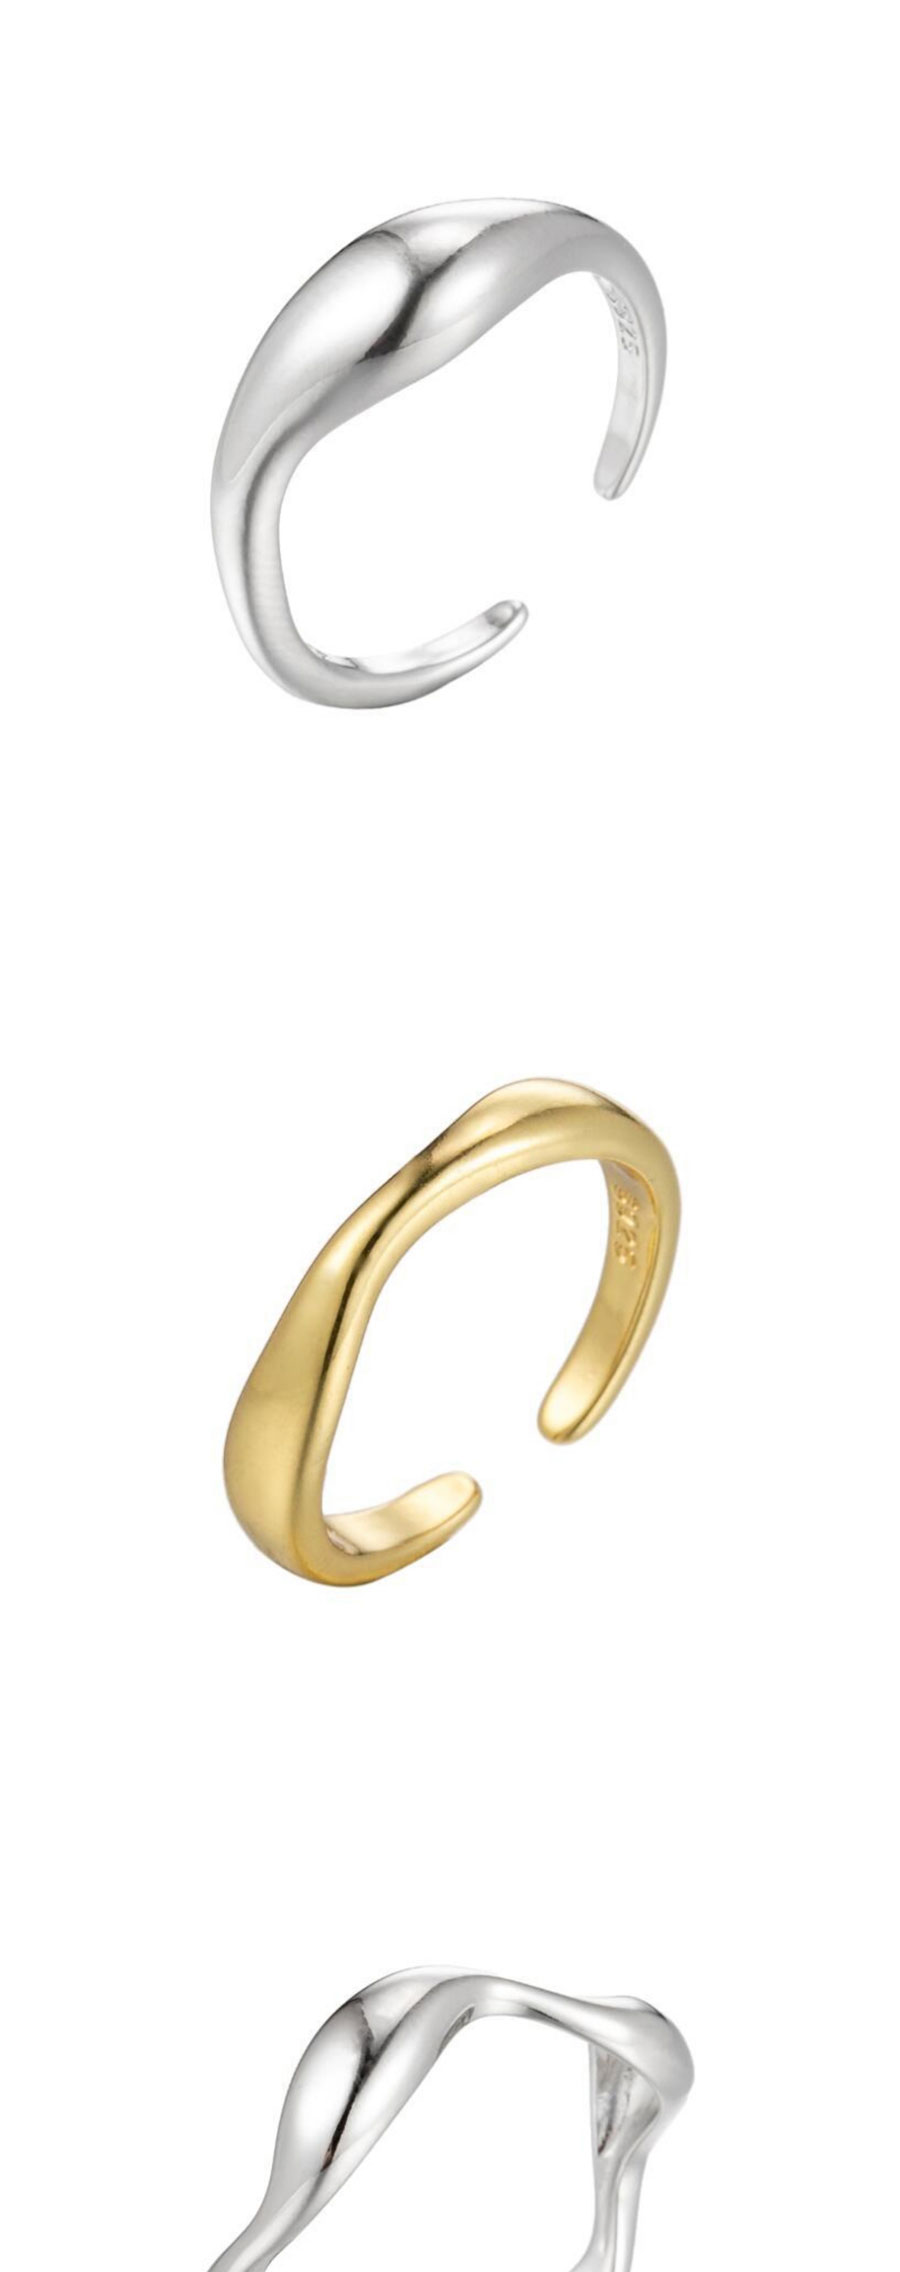 Fashion Golden-9 Stainless Steel Irregular Drop Opening Ring,Rings